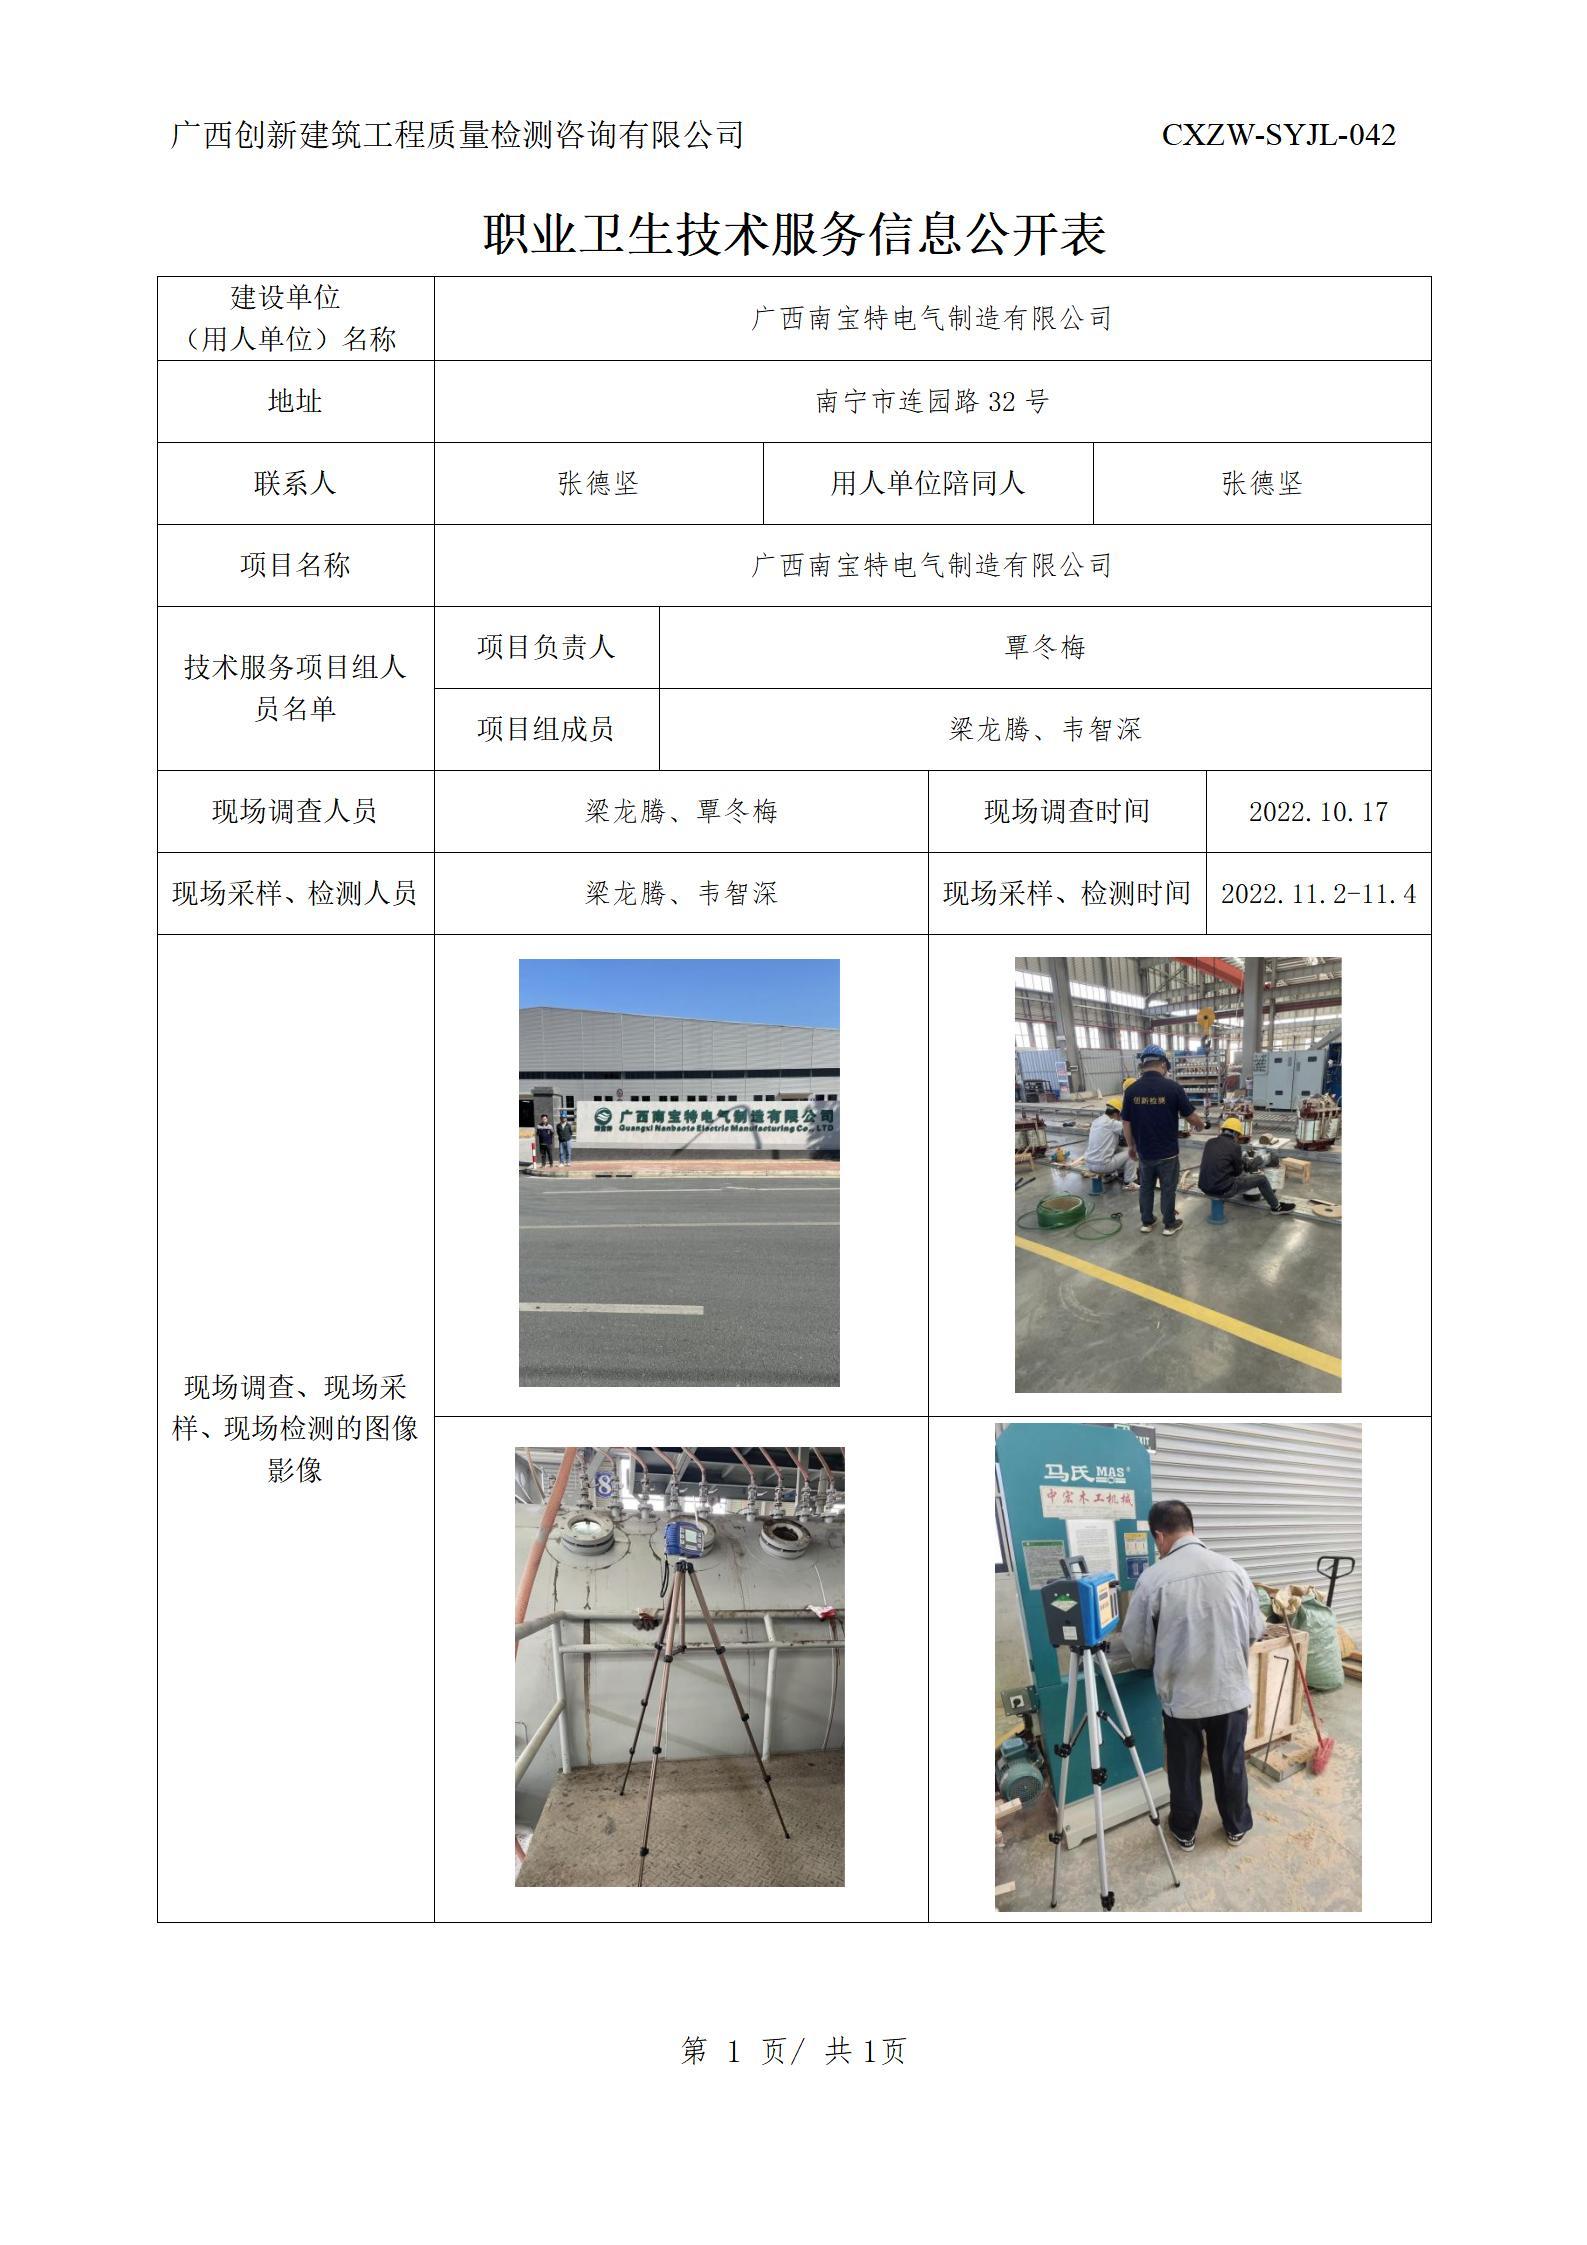 【职业卫生信息公开】广西南宝特电气制造有限公司